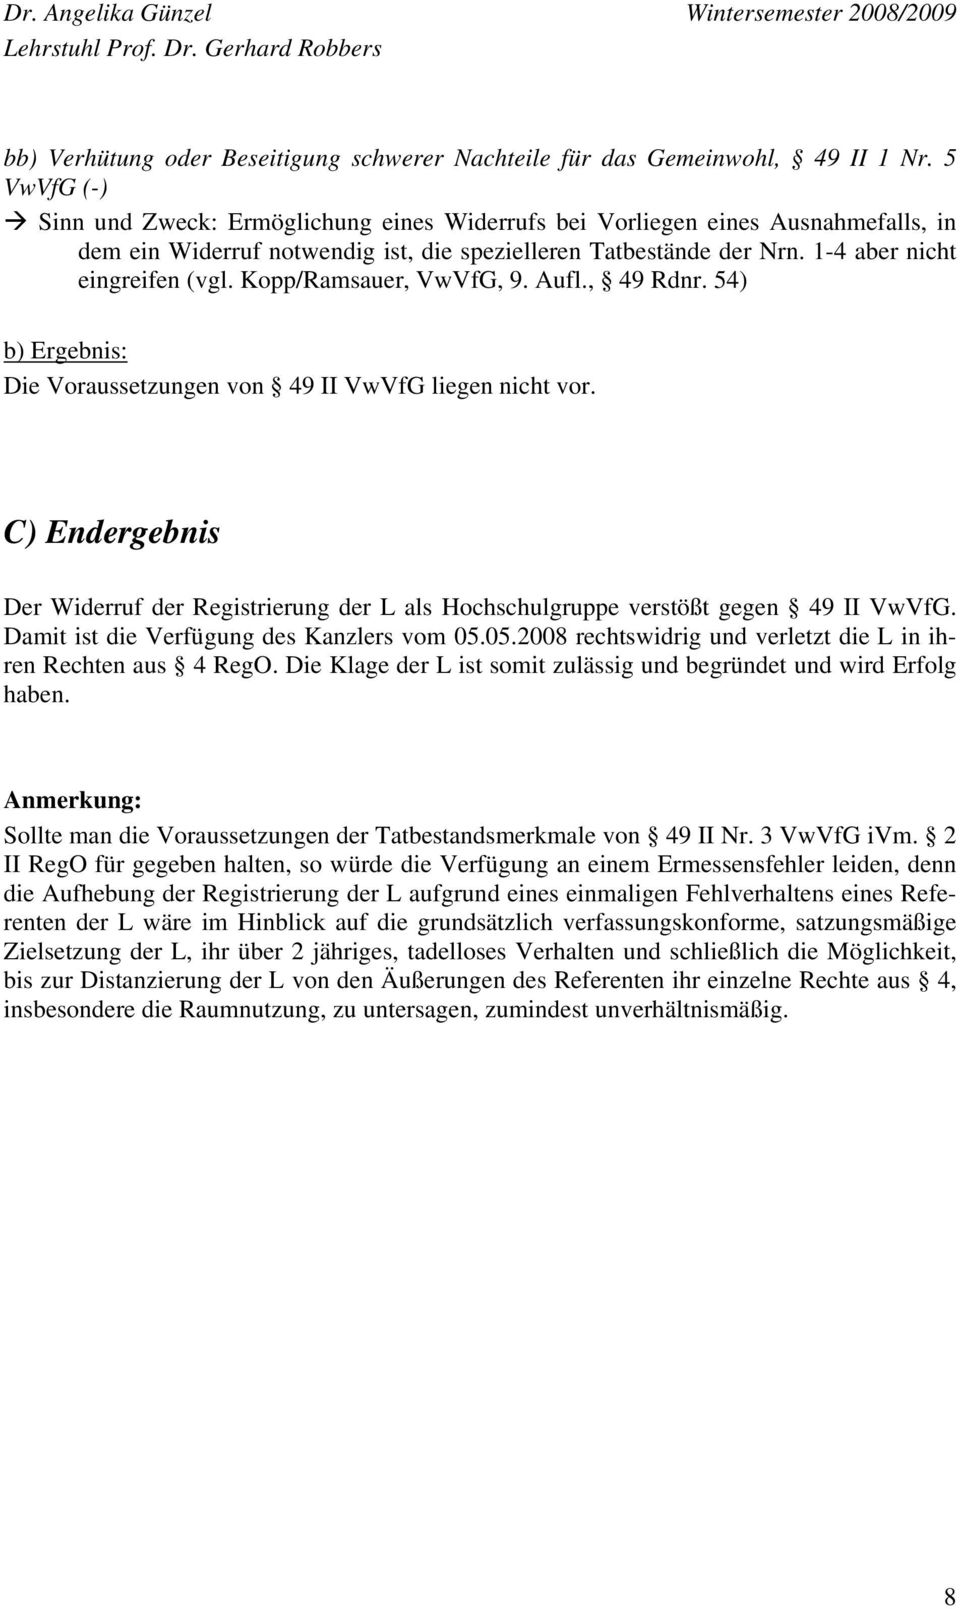 Kopp/Ramsauer, VwVfG, 9. Aufl., 49 Rdnr. 54) b) Ergebnis: Die Voraussetzungen von 49 II VwVfG liegen nicht vor.